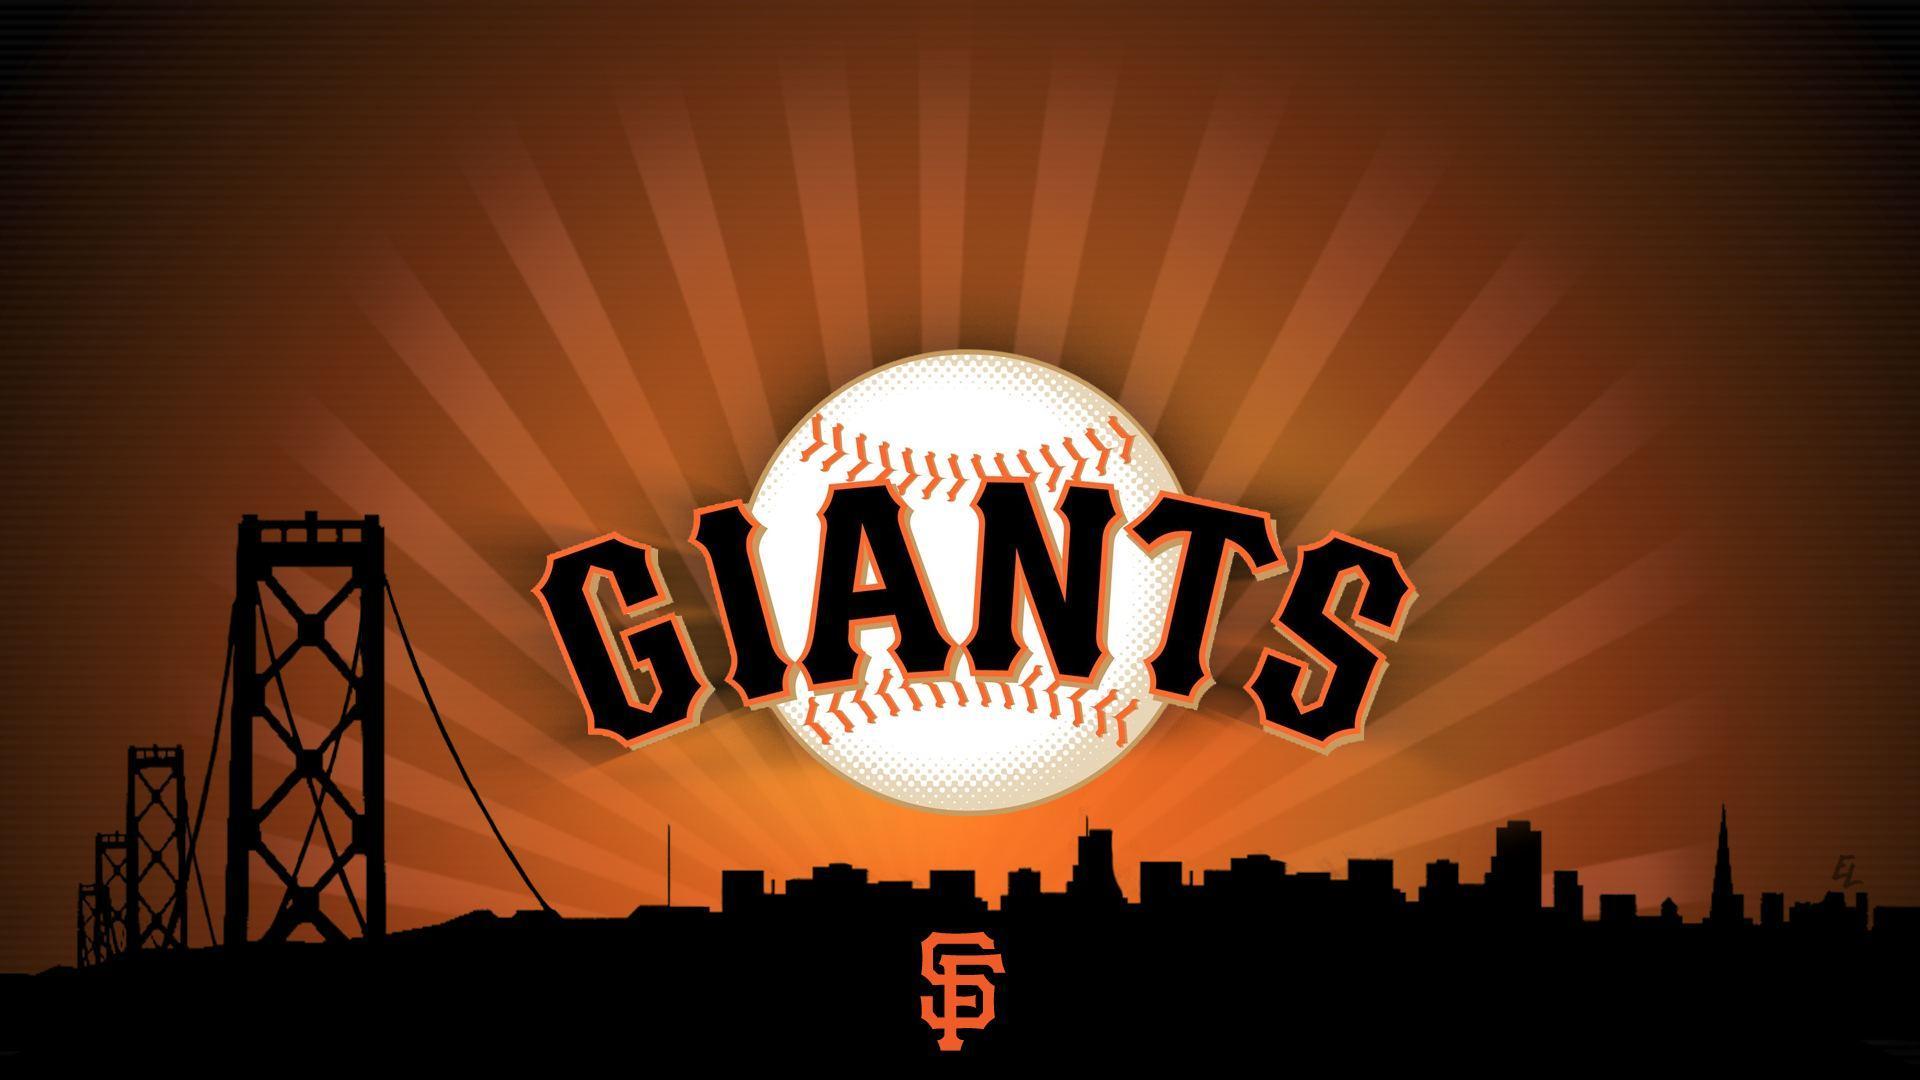 San Francisco Giants wallpaper HD free download